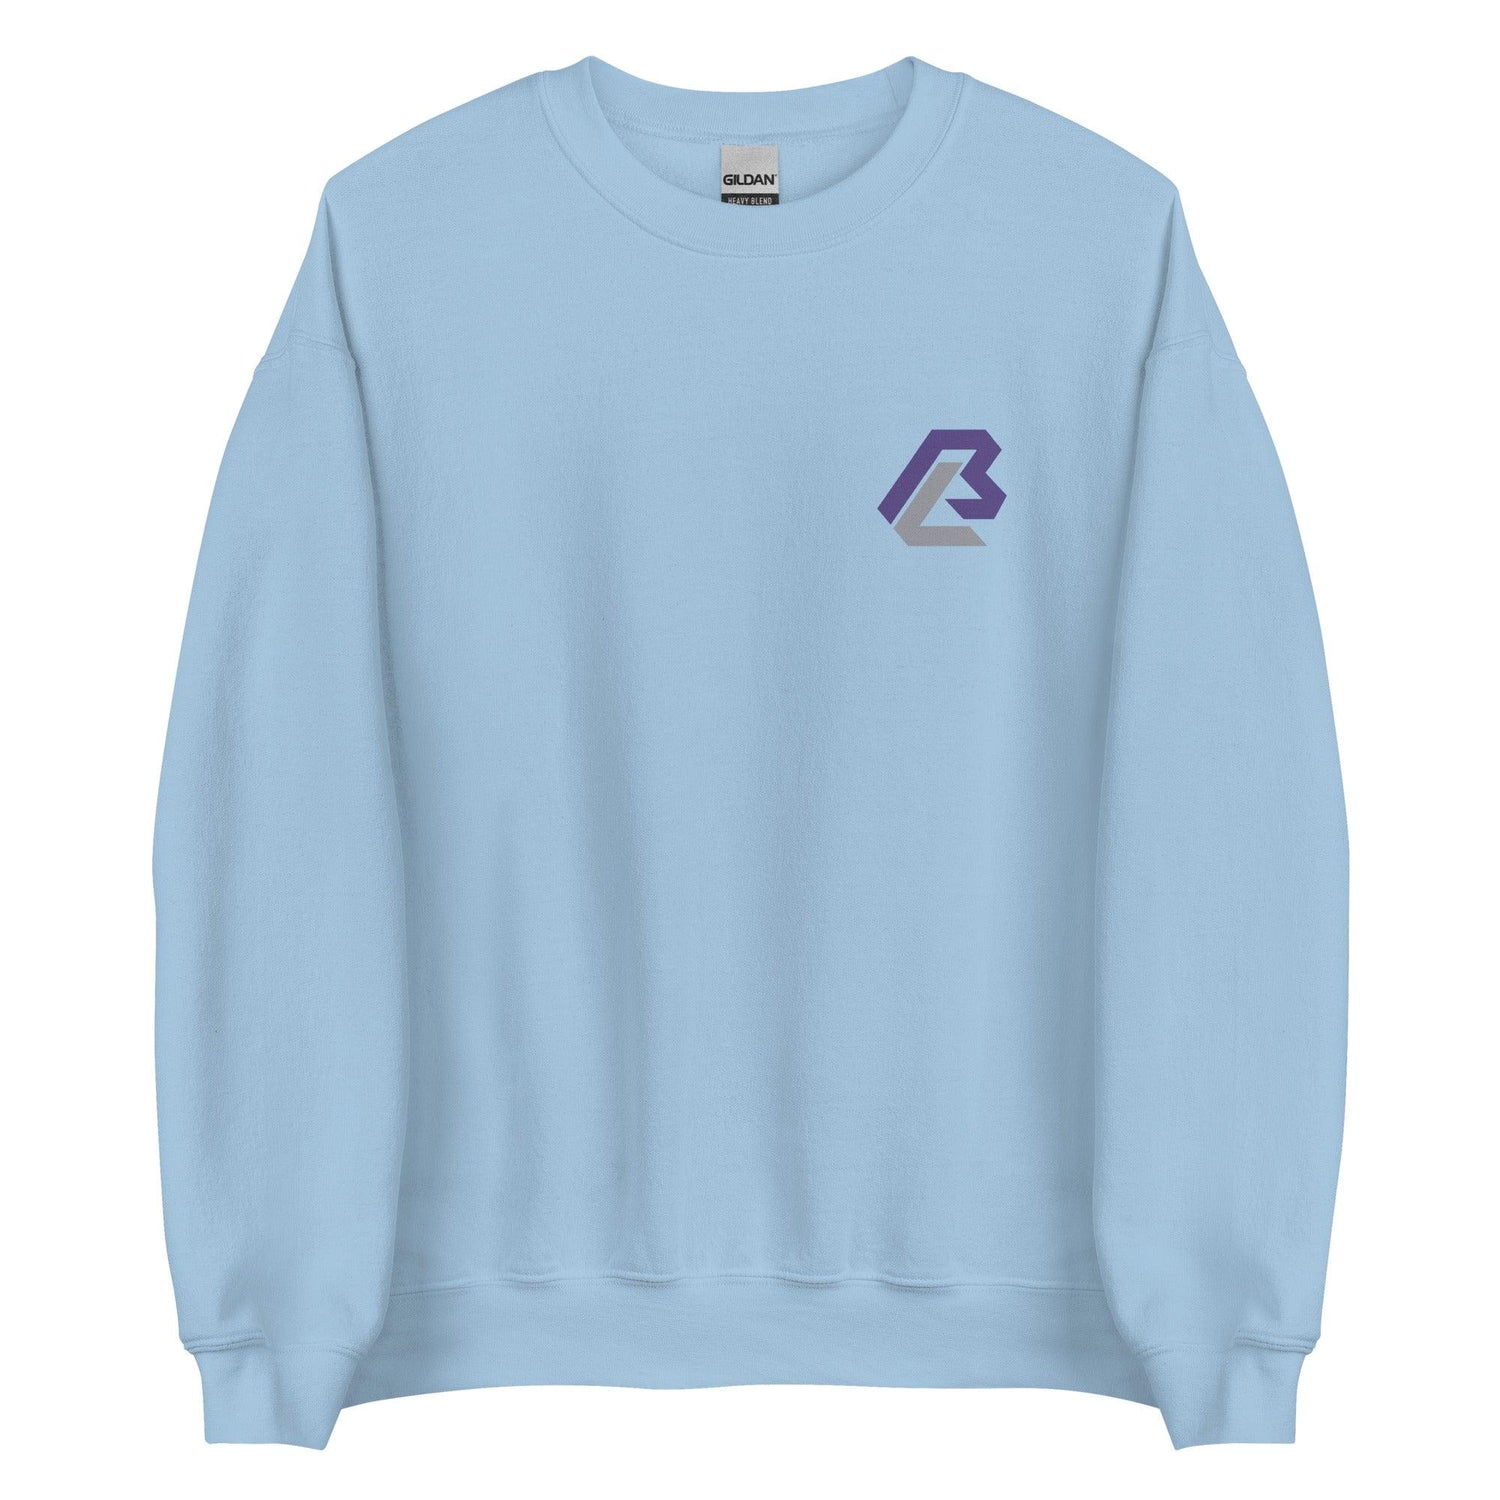 Bairon Ledesma "Essential" Sweatshirt - Fan Arch